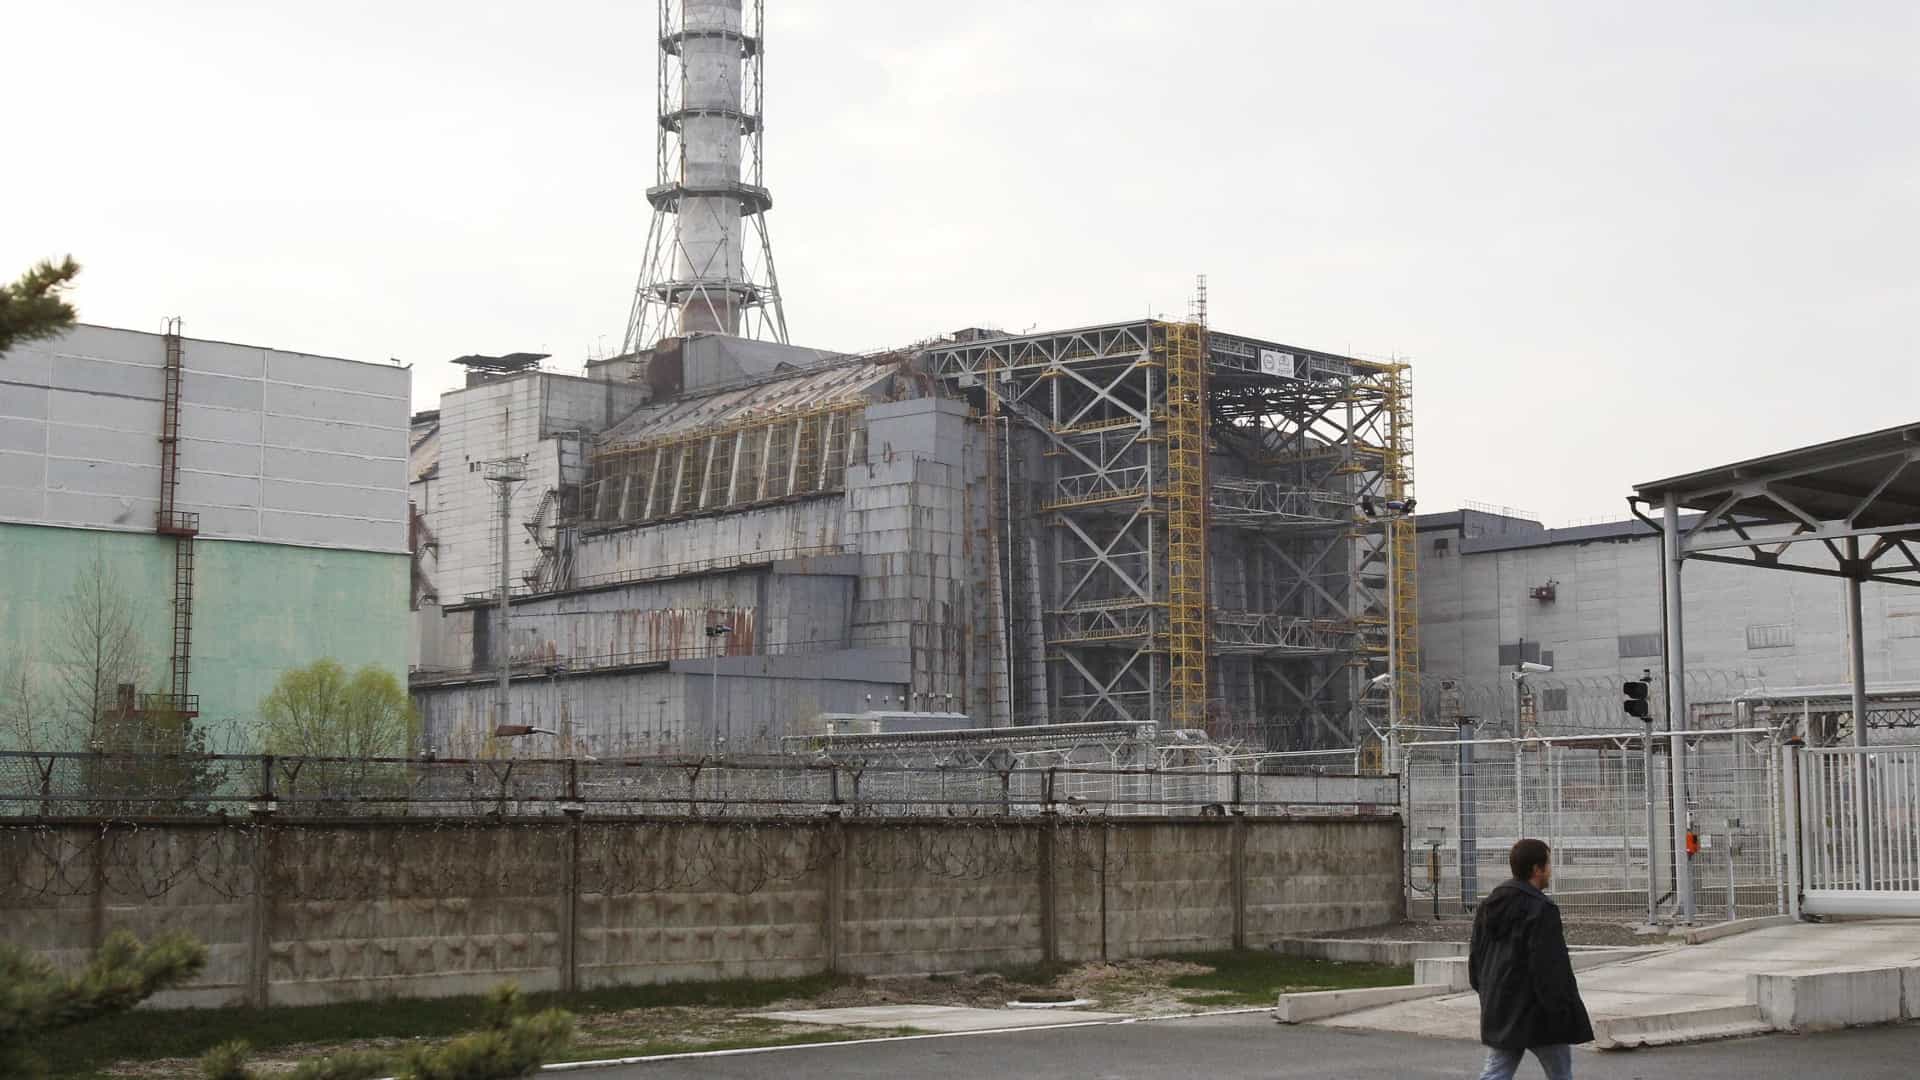 Agência atómica sem dados de Chernobyl